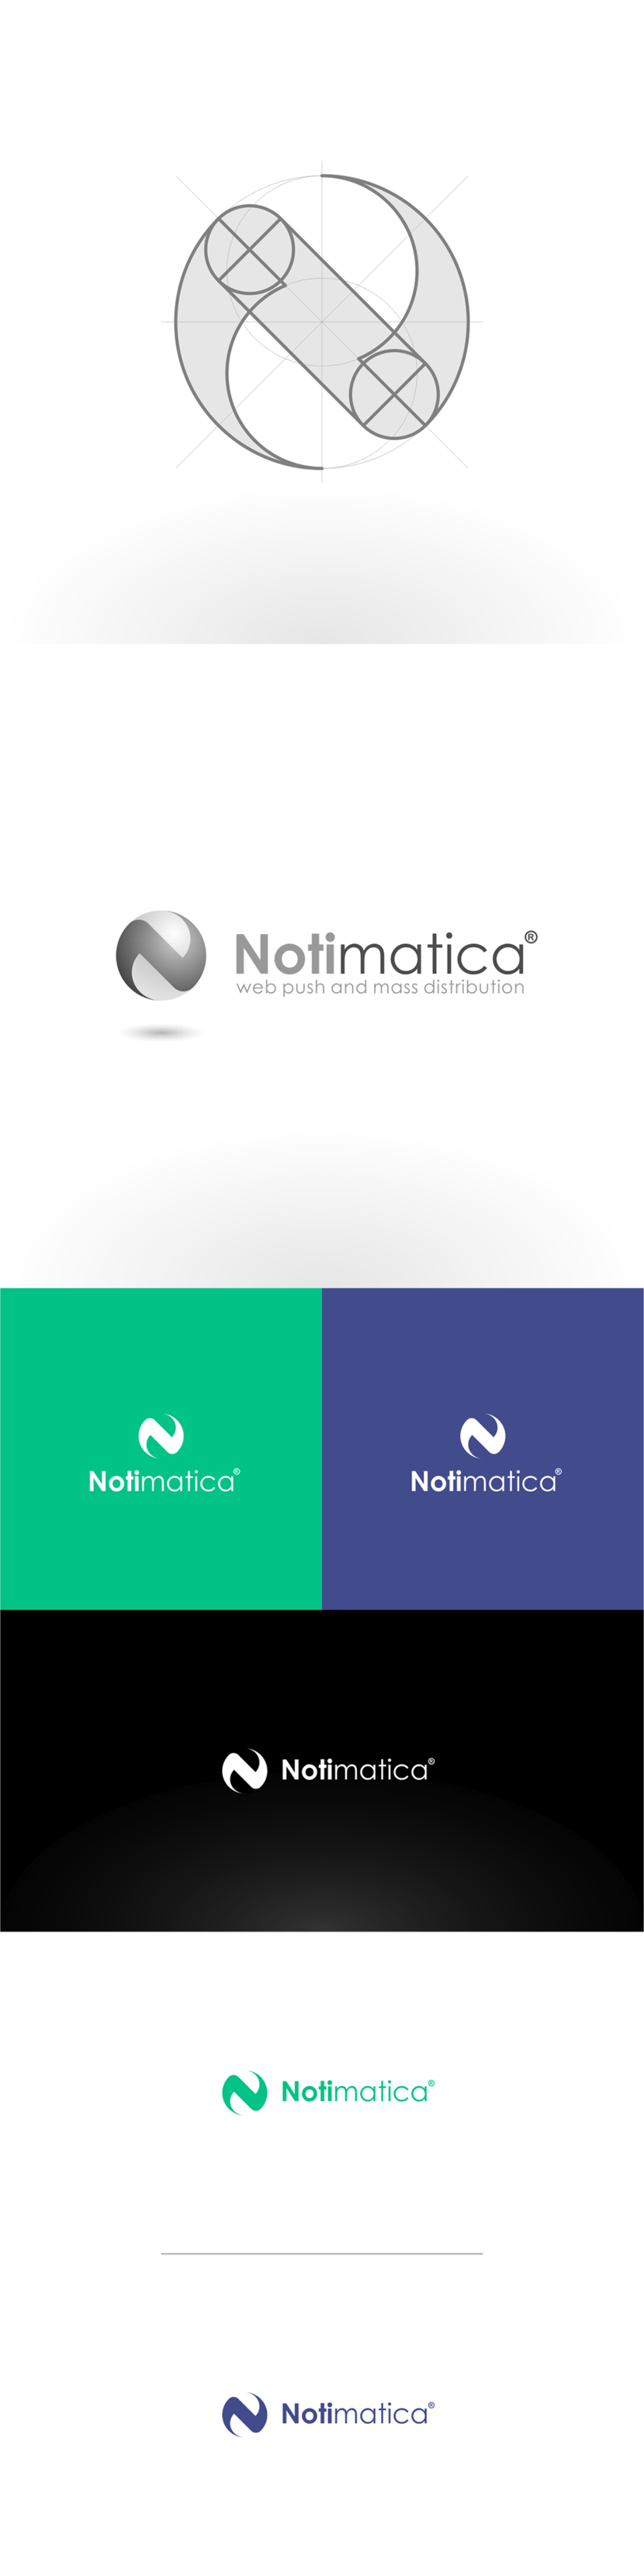 + Корректировки, уточнения и дополнения... - Разработать логотип веб-сервиса Notimatica.io